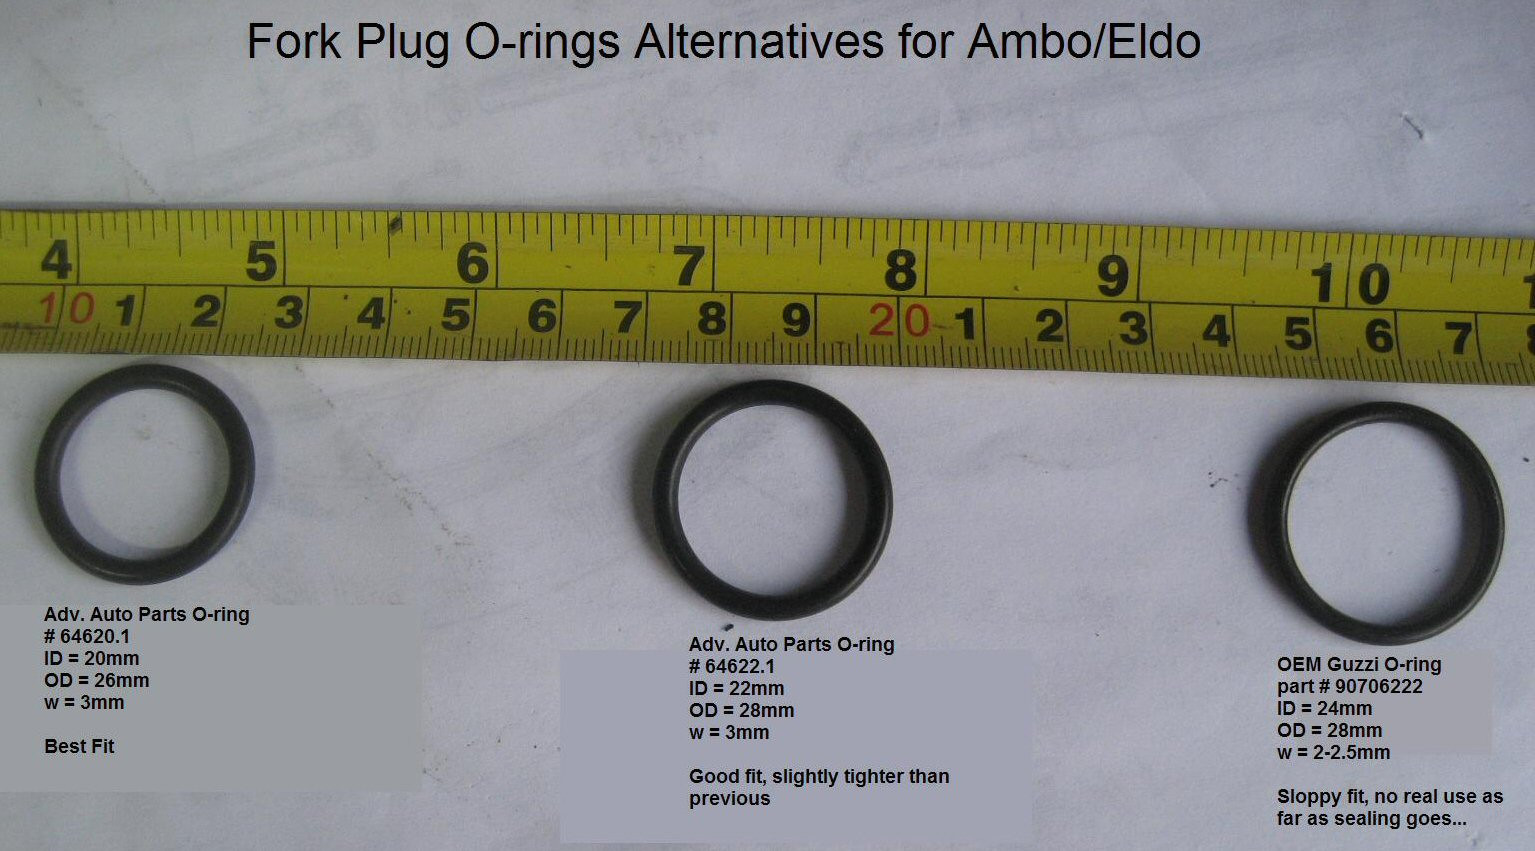 O-rings for the fork top plug (MG# 90706222).